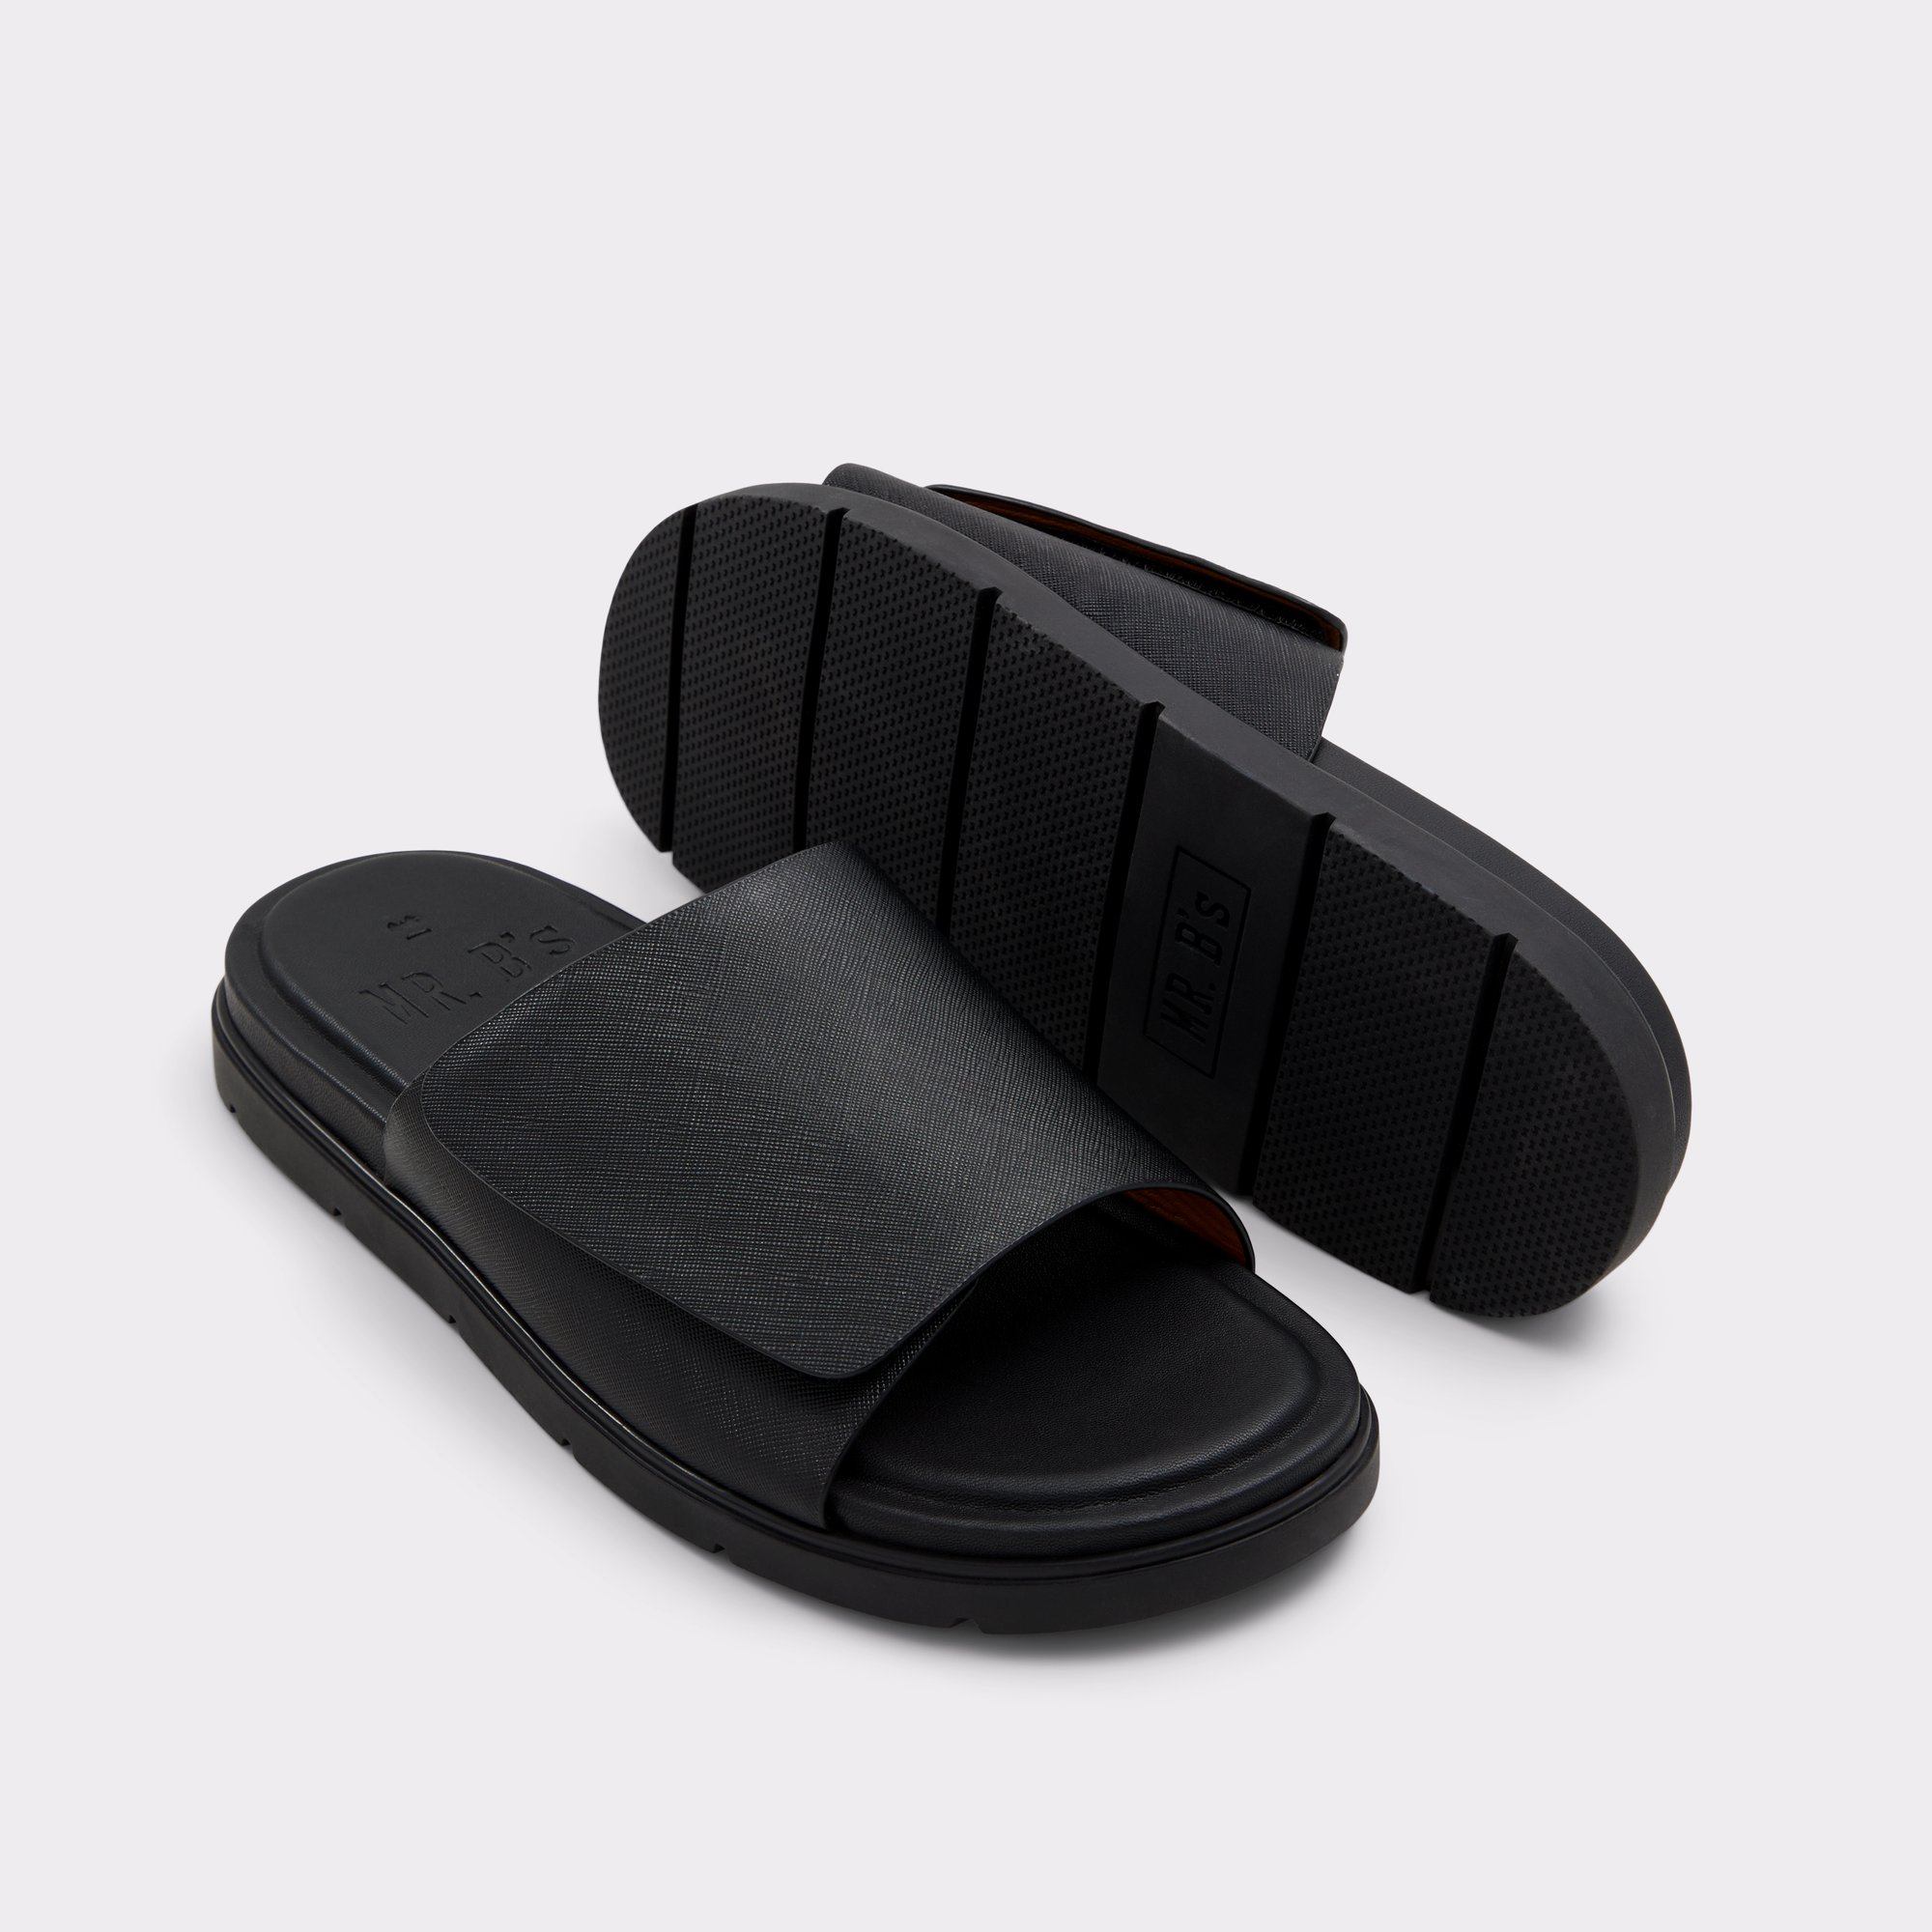 Jaxon Black Men's Sandals & Slides | ALDO US